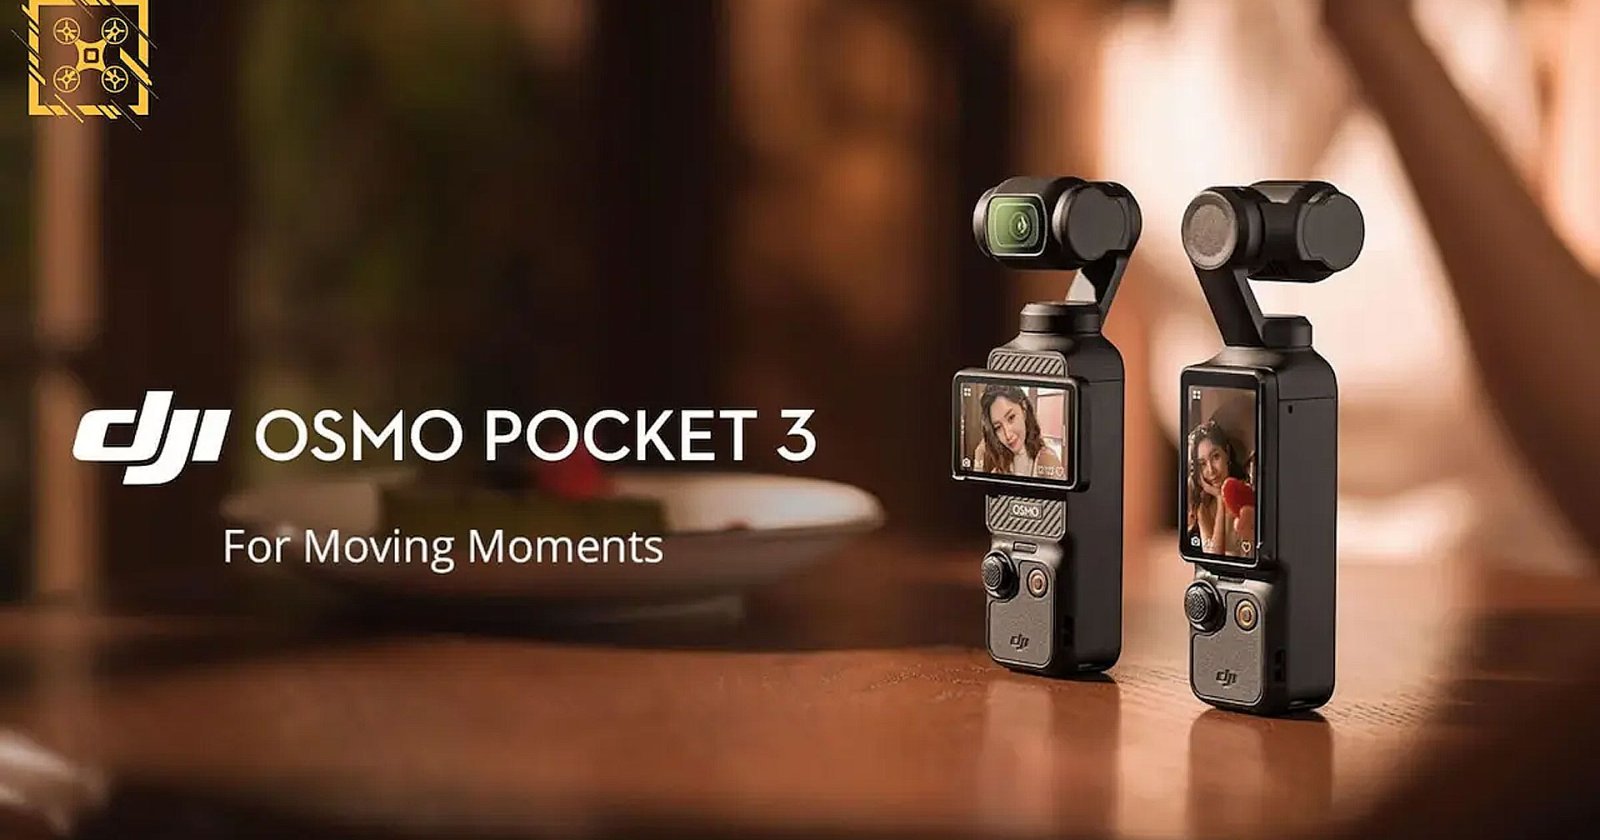 เผยภาพหลุด DJI Osmo Pocket 3 เซนเซอร์ใหญ่ 1 นิ้ว 4K/120p เตรียมเปิดตัวปลายเดือนนี้